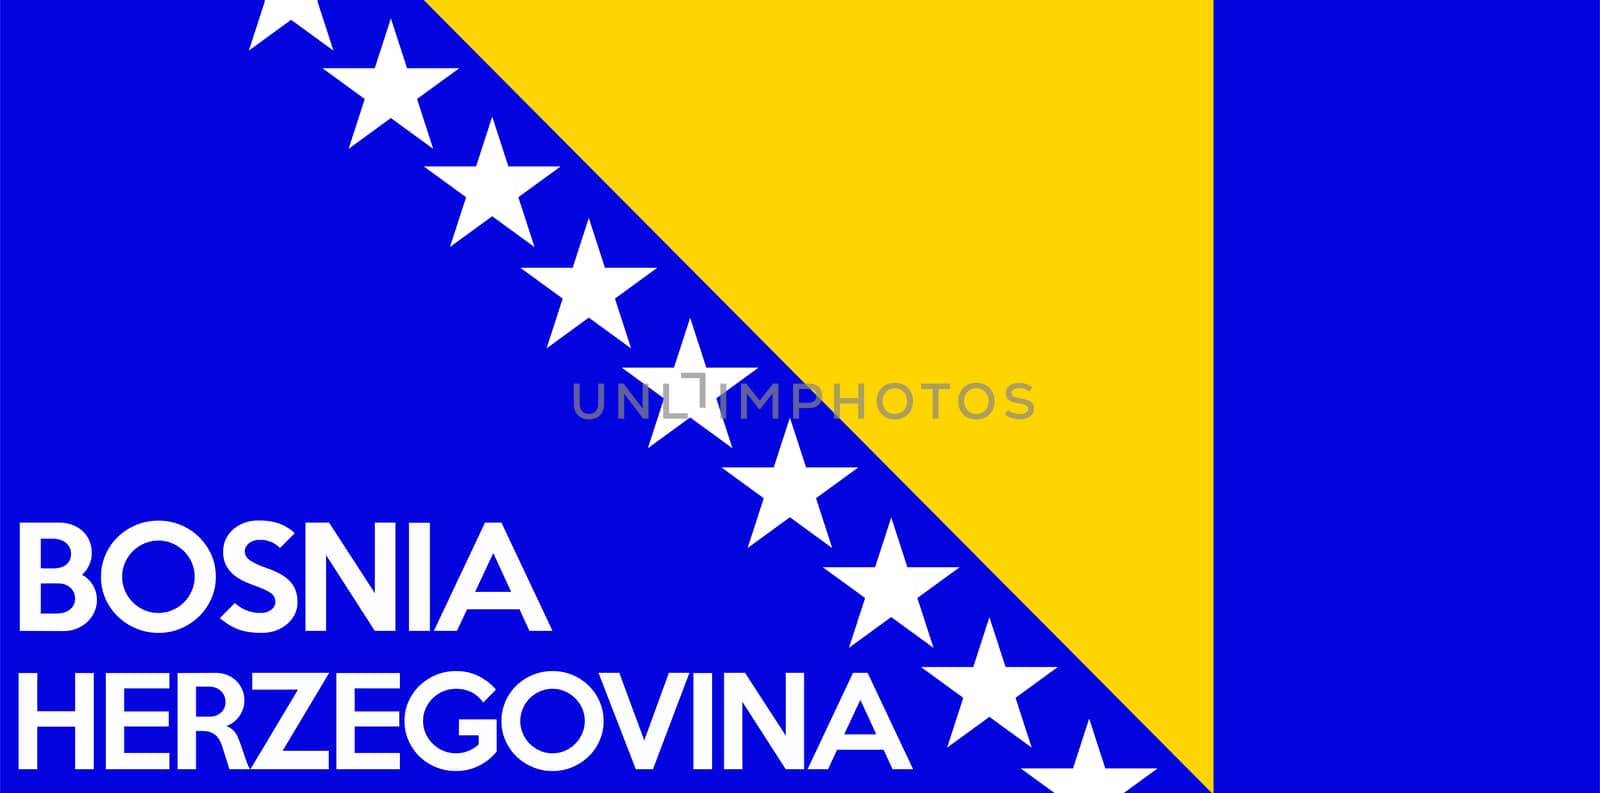 flag of bosnia herzegovina by tony4urban